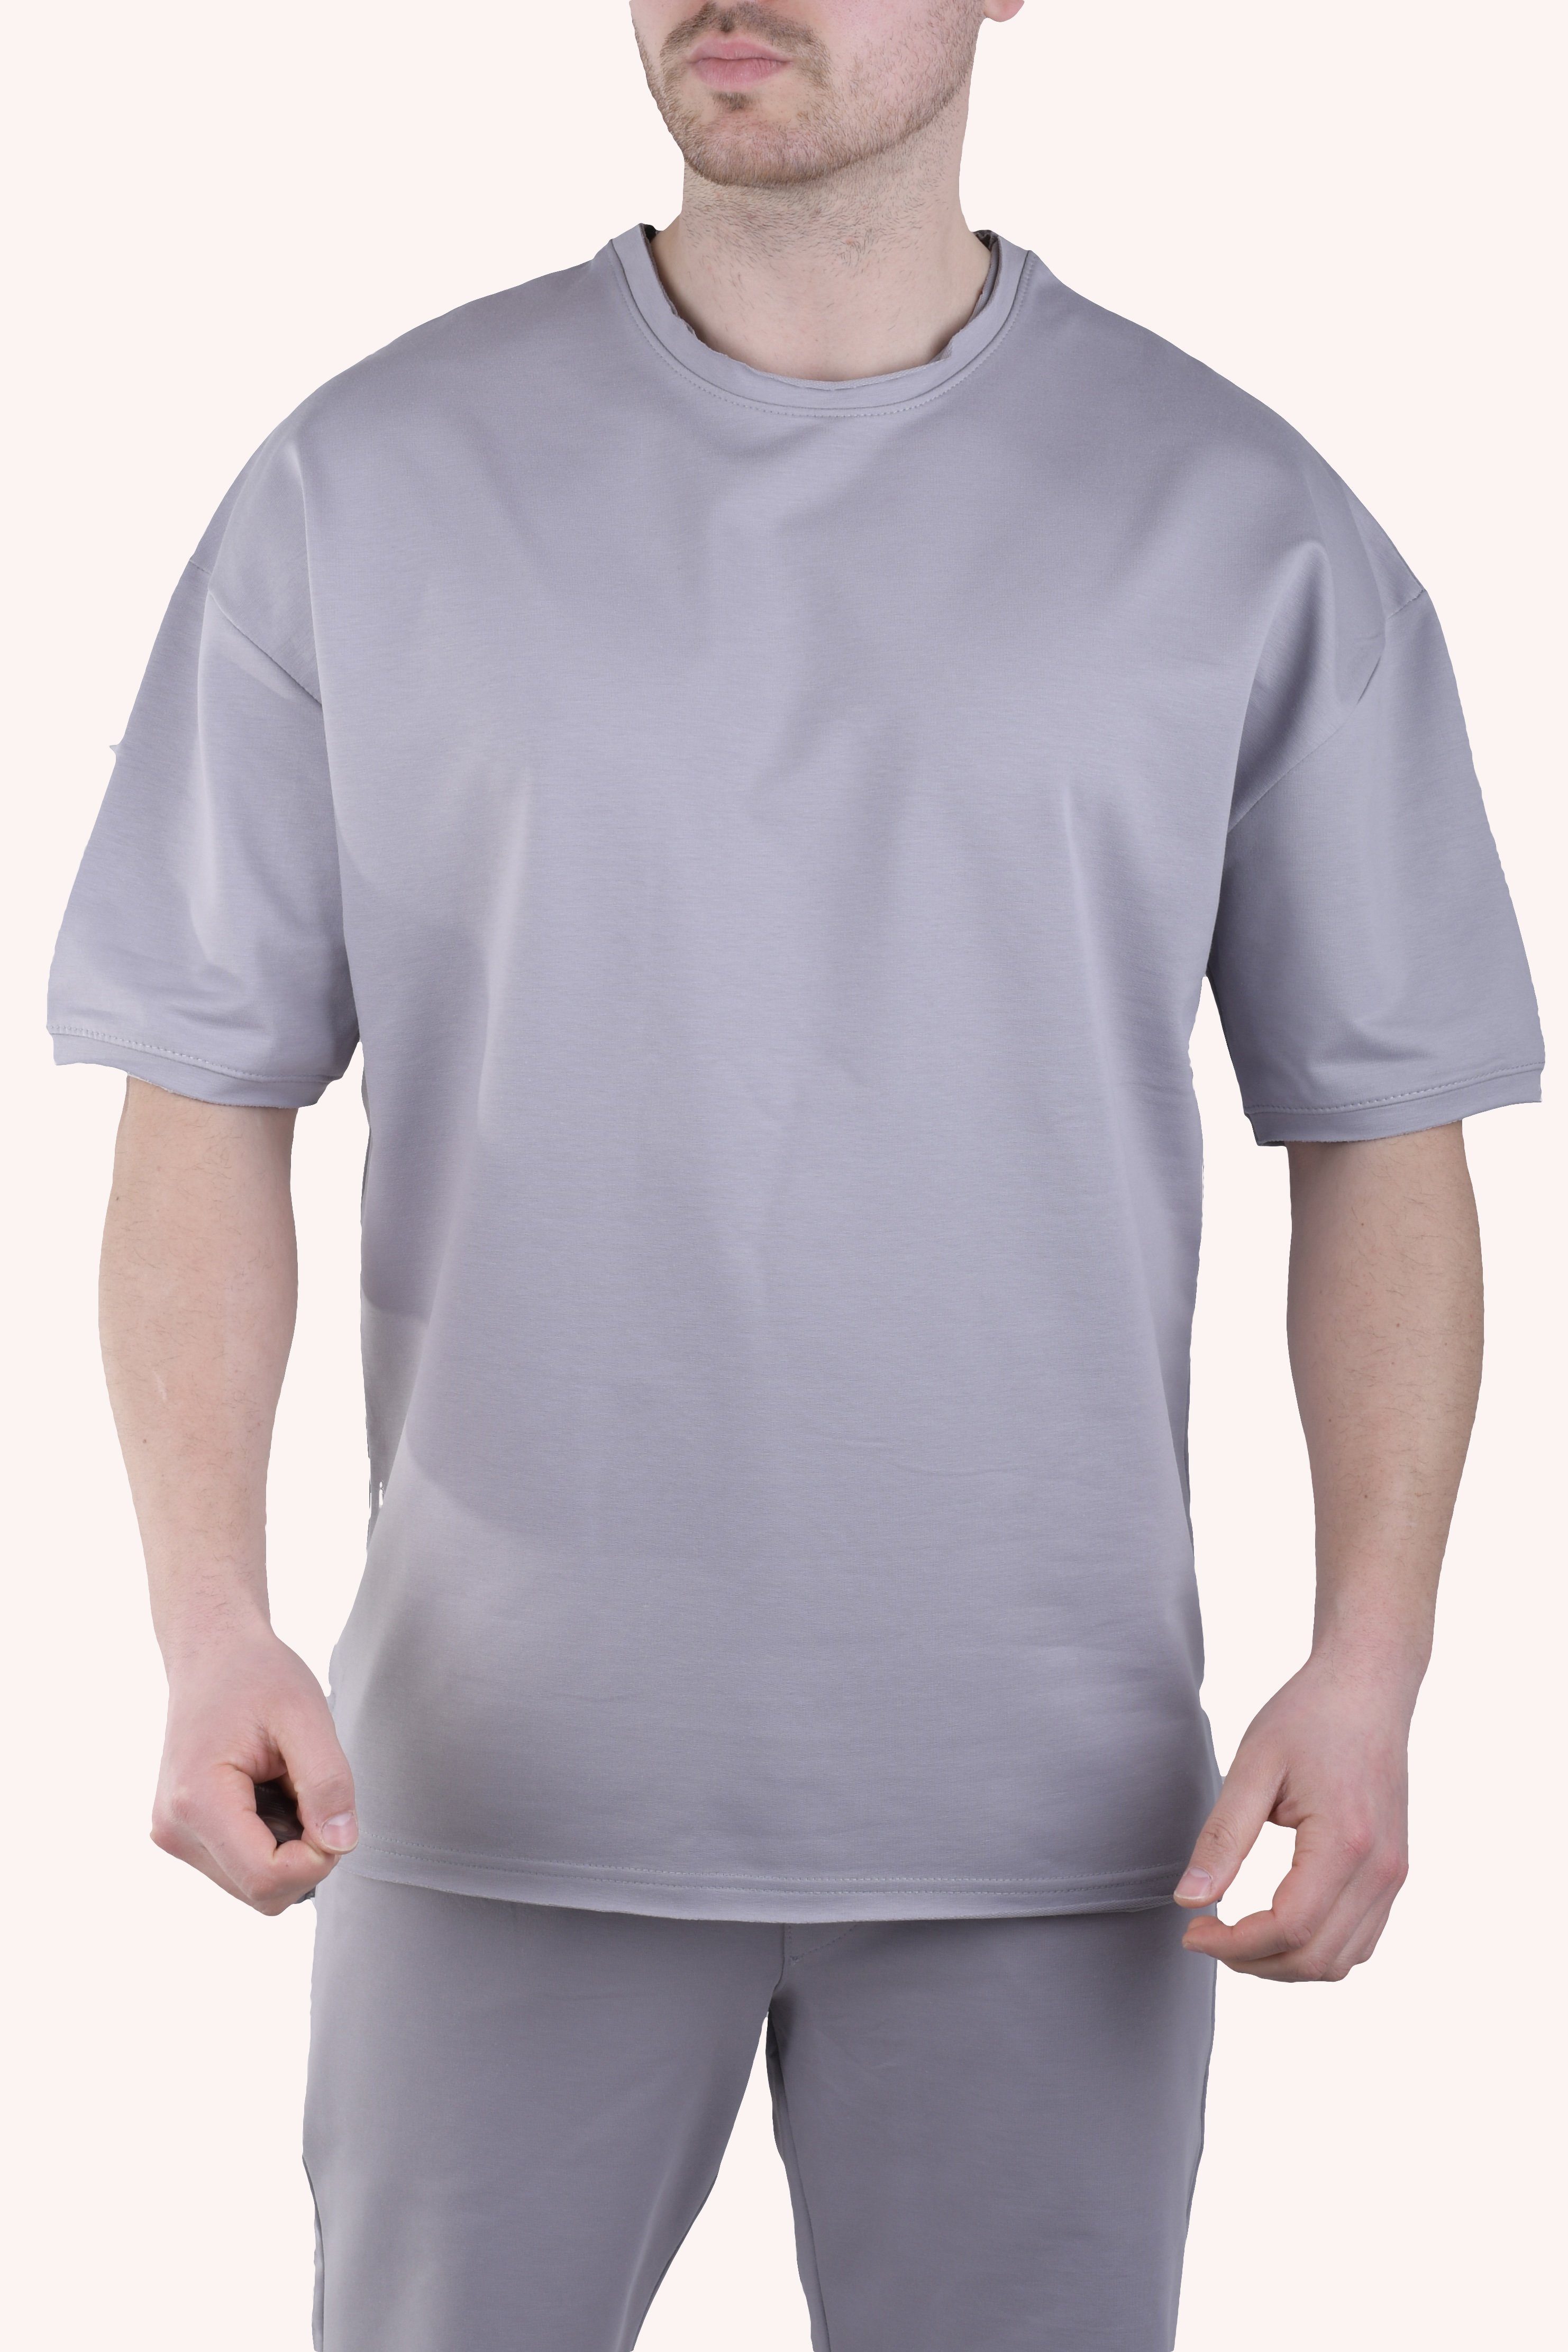 Megaman Jeans T-Shirt Herren T-Shirt Oversize Sommer Shirt Megaman TS5011 M Weiß Grau